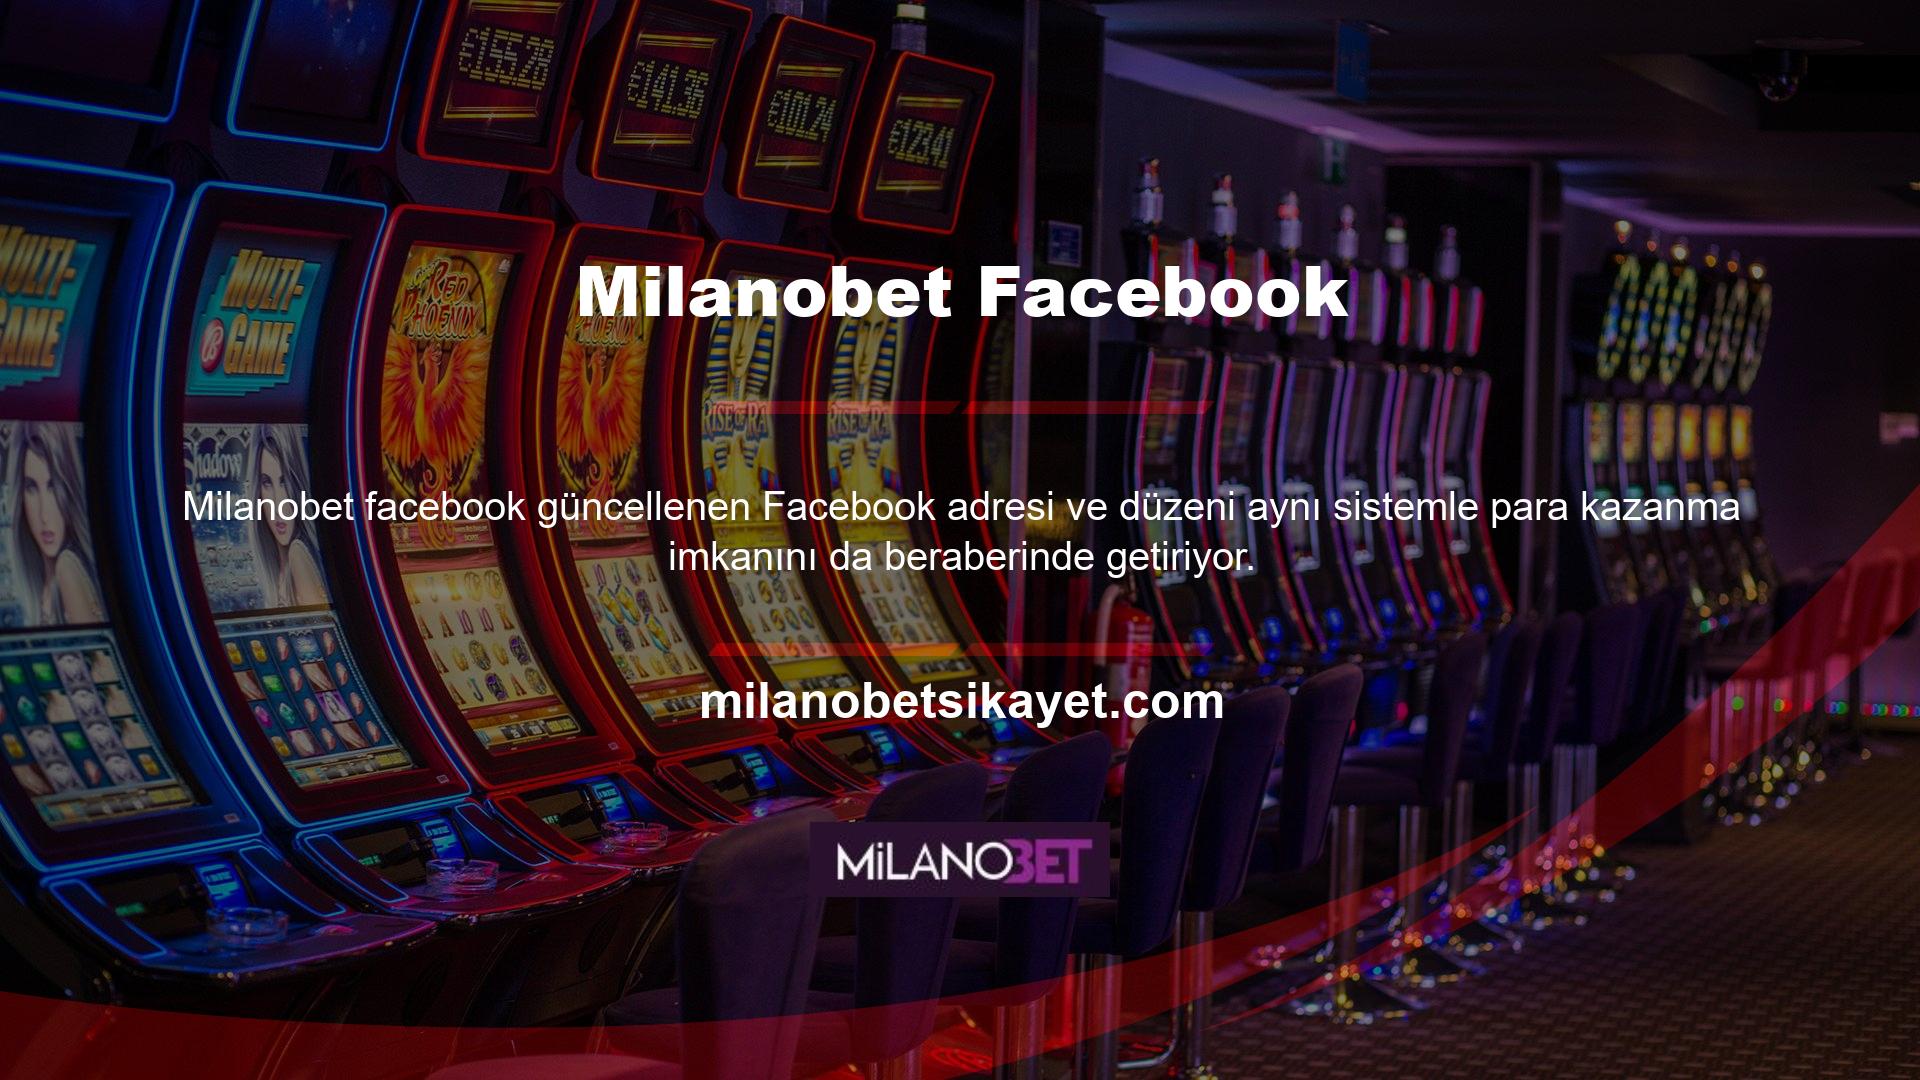 Milanobet Facebook adresi, aynı sistem içerisinde para kazanabileceğiniz alemlerin kapılarını açıyor